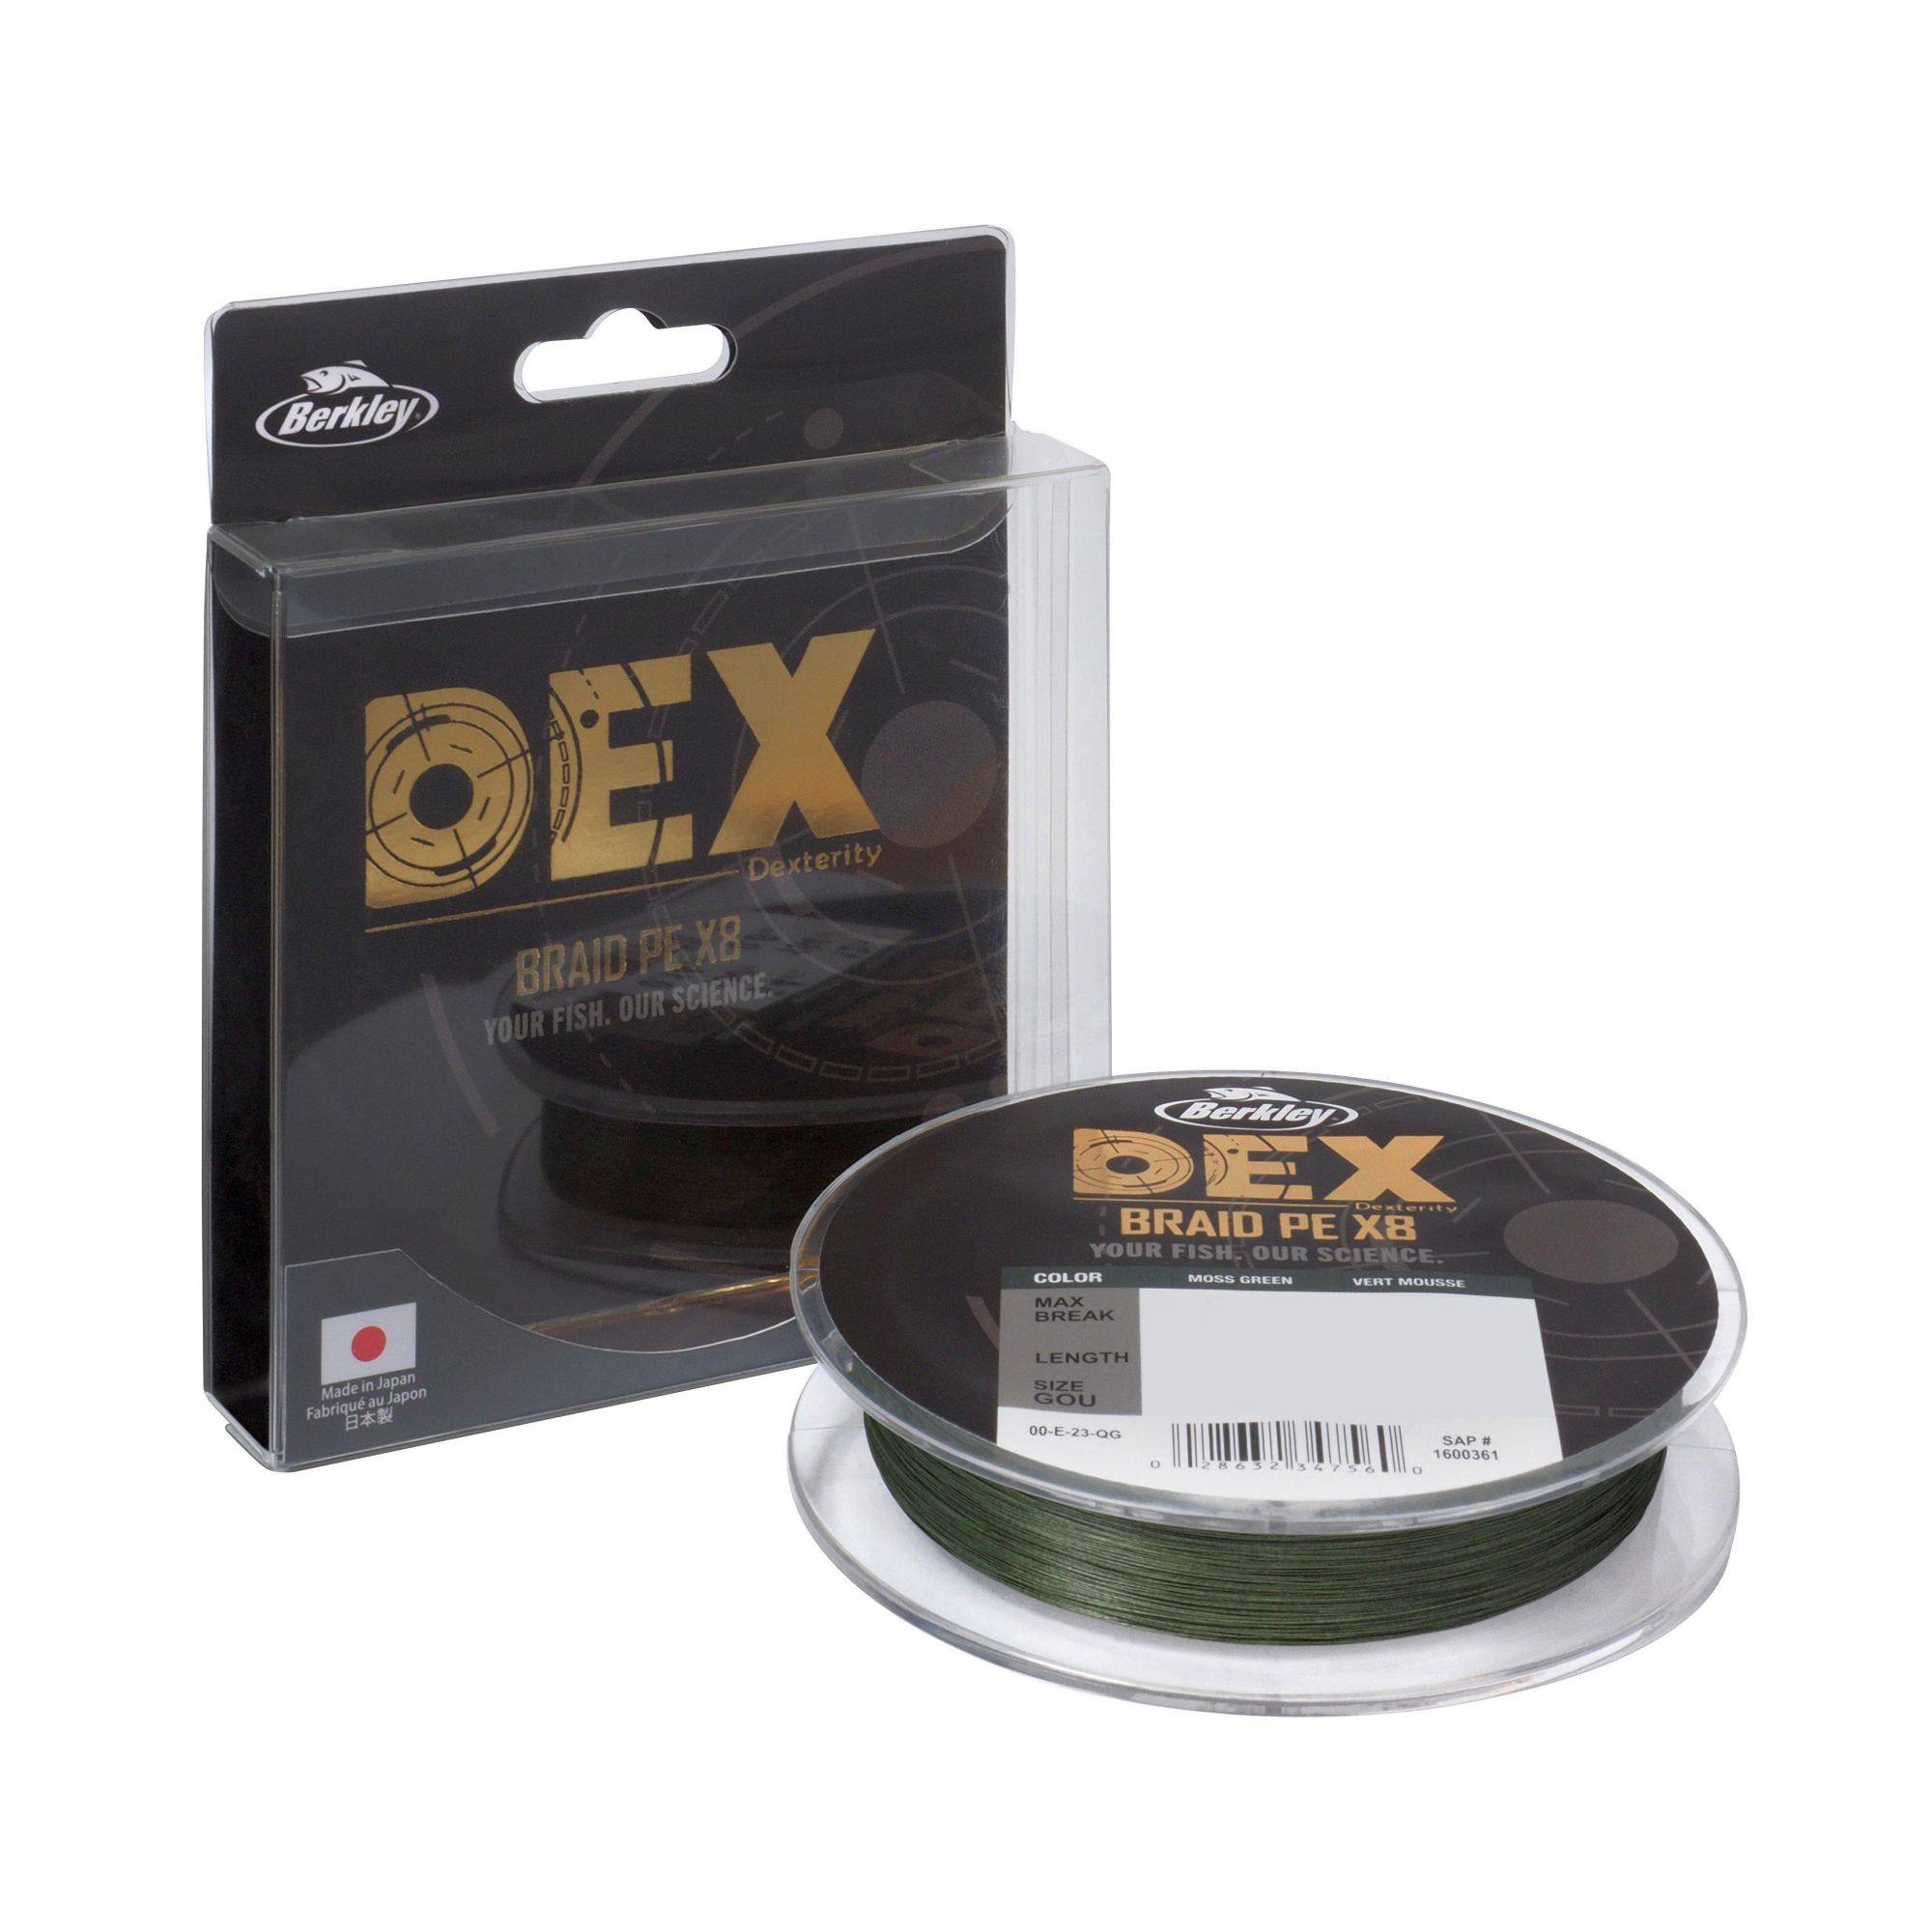 BERKLEY DEX Braid PE X8 Moss Green 150 m 0,08 mm 6,8 kg